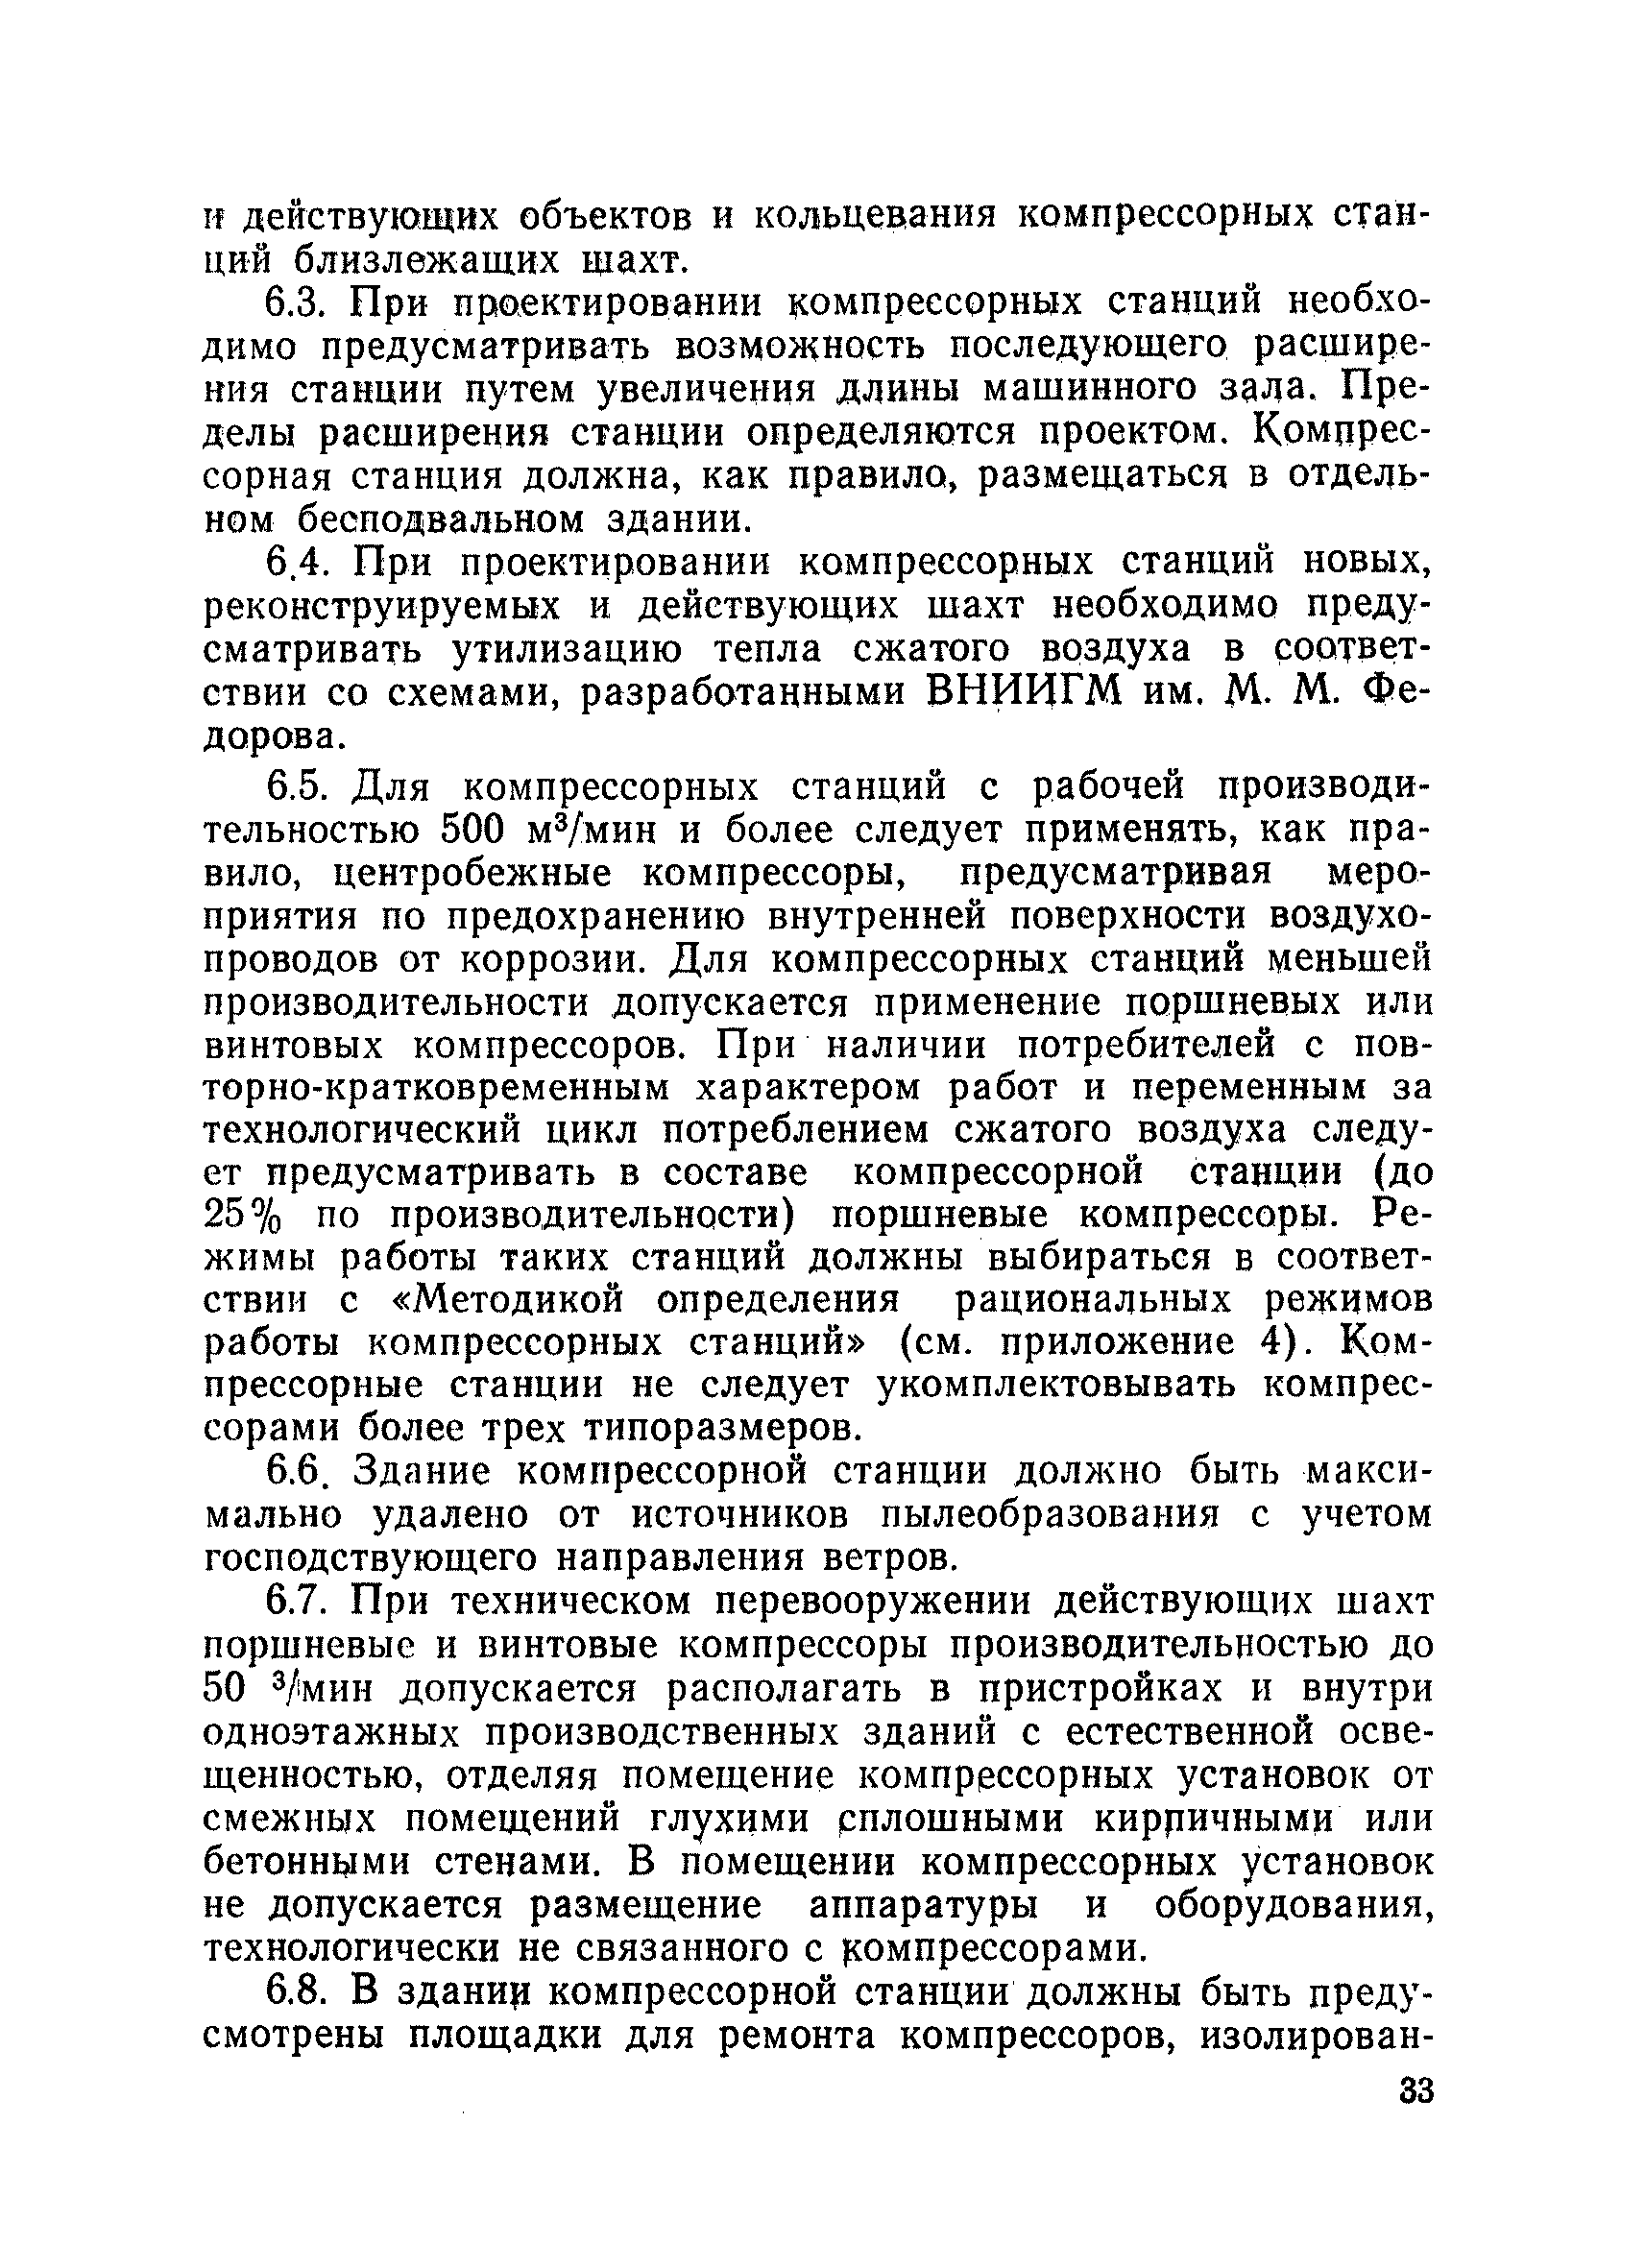 ВНТП 1-86